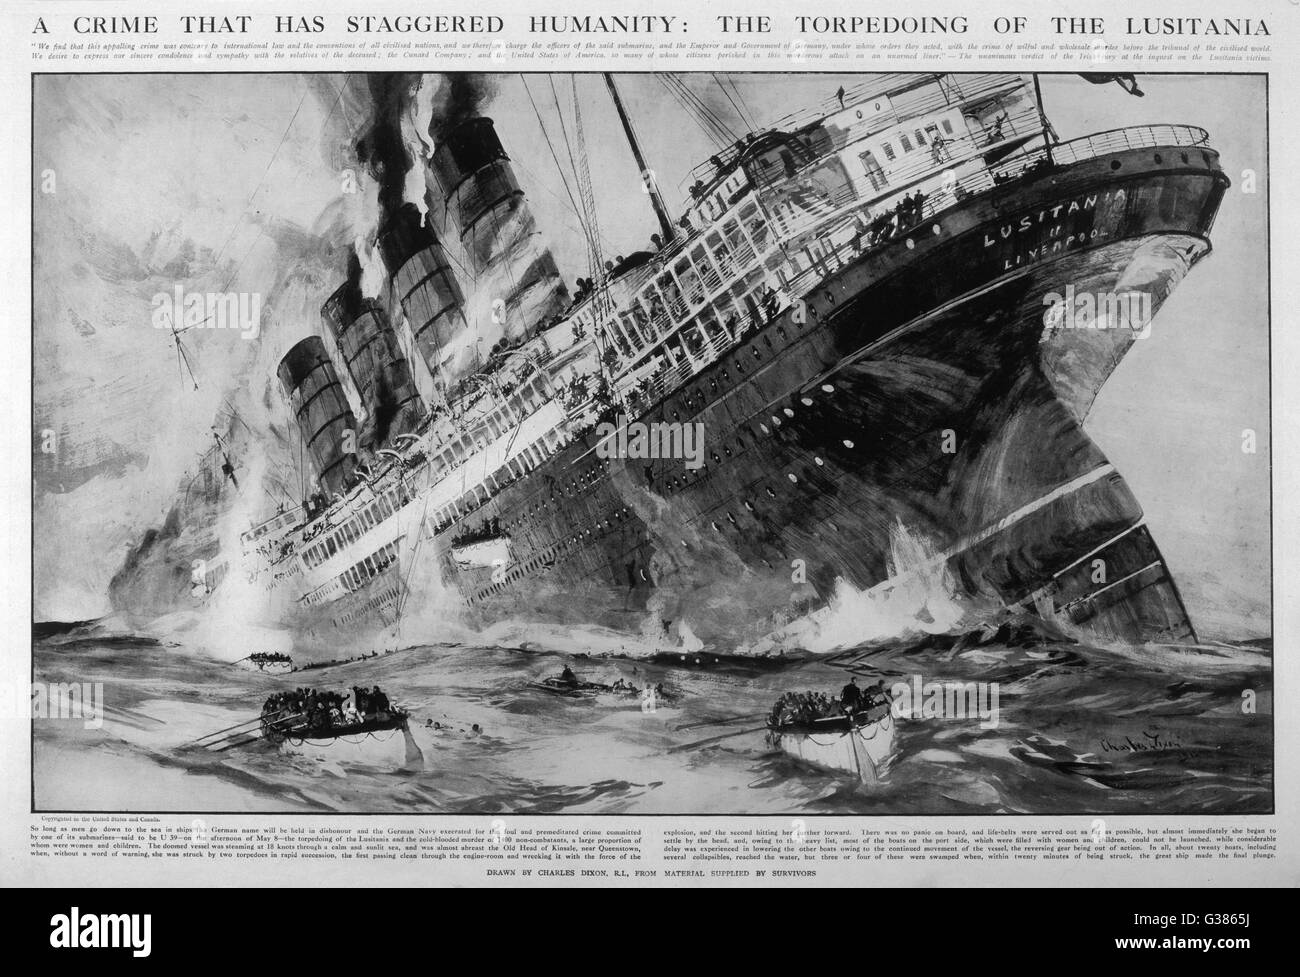 Le paquebot Cunard les puits, avec la perte de 1198 vies, après avoir été torpillé au large de la côte de l'Irlande par le U-boot allemand U-20, tandis que de retourner en Grande-Bretagne à partir de l'Amérique. Date : 7 mai 1915 Banque D'Images